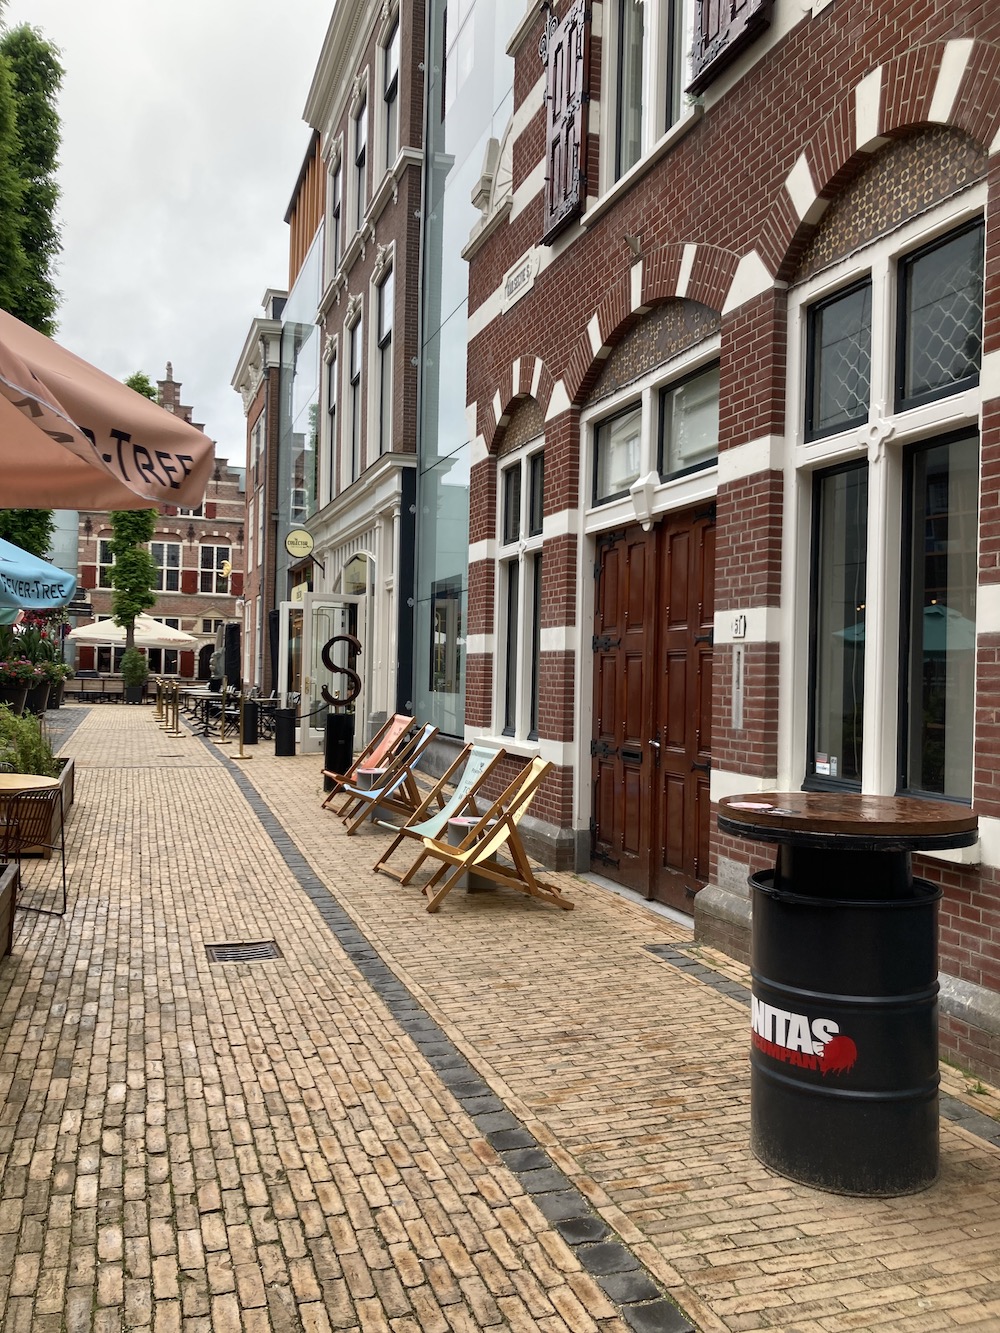 Foodhallen straatje in Den Haag